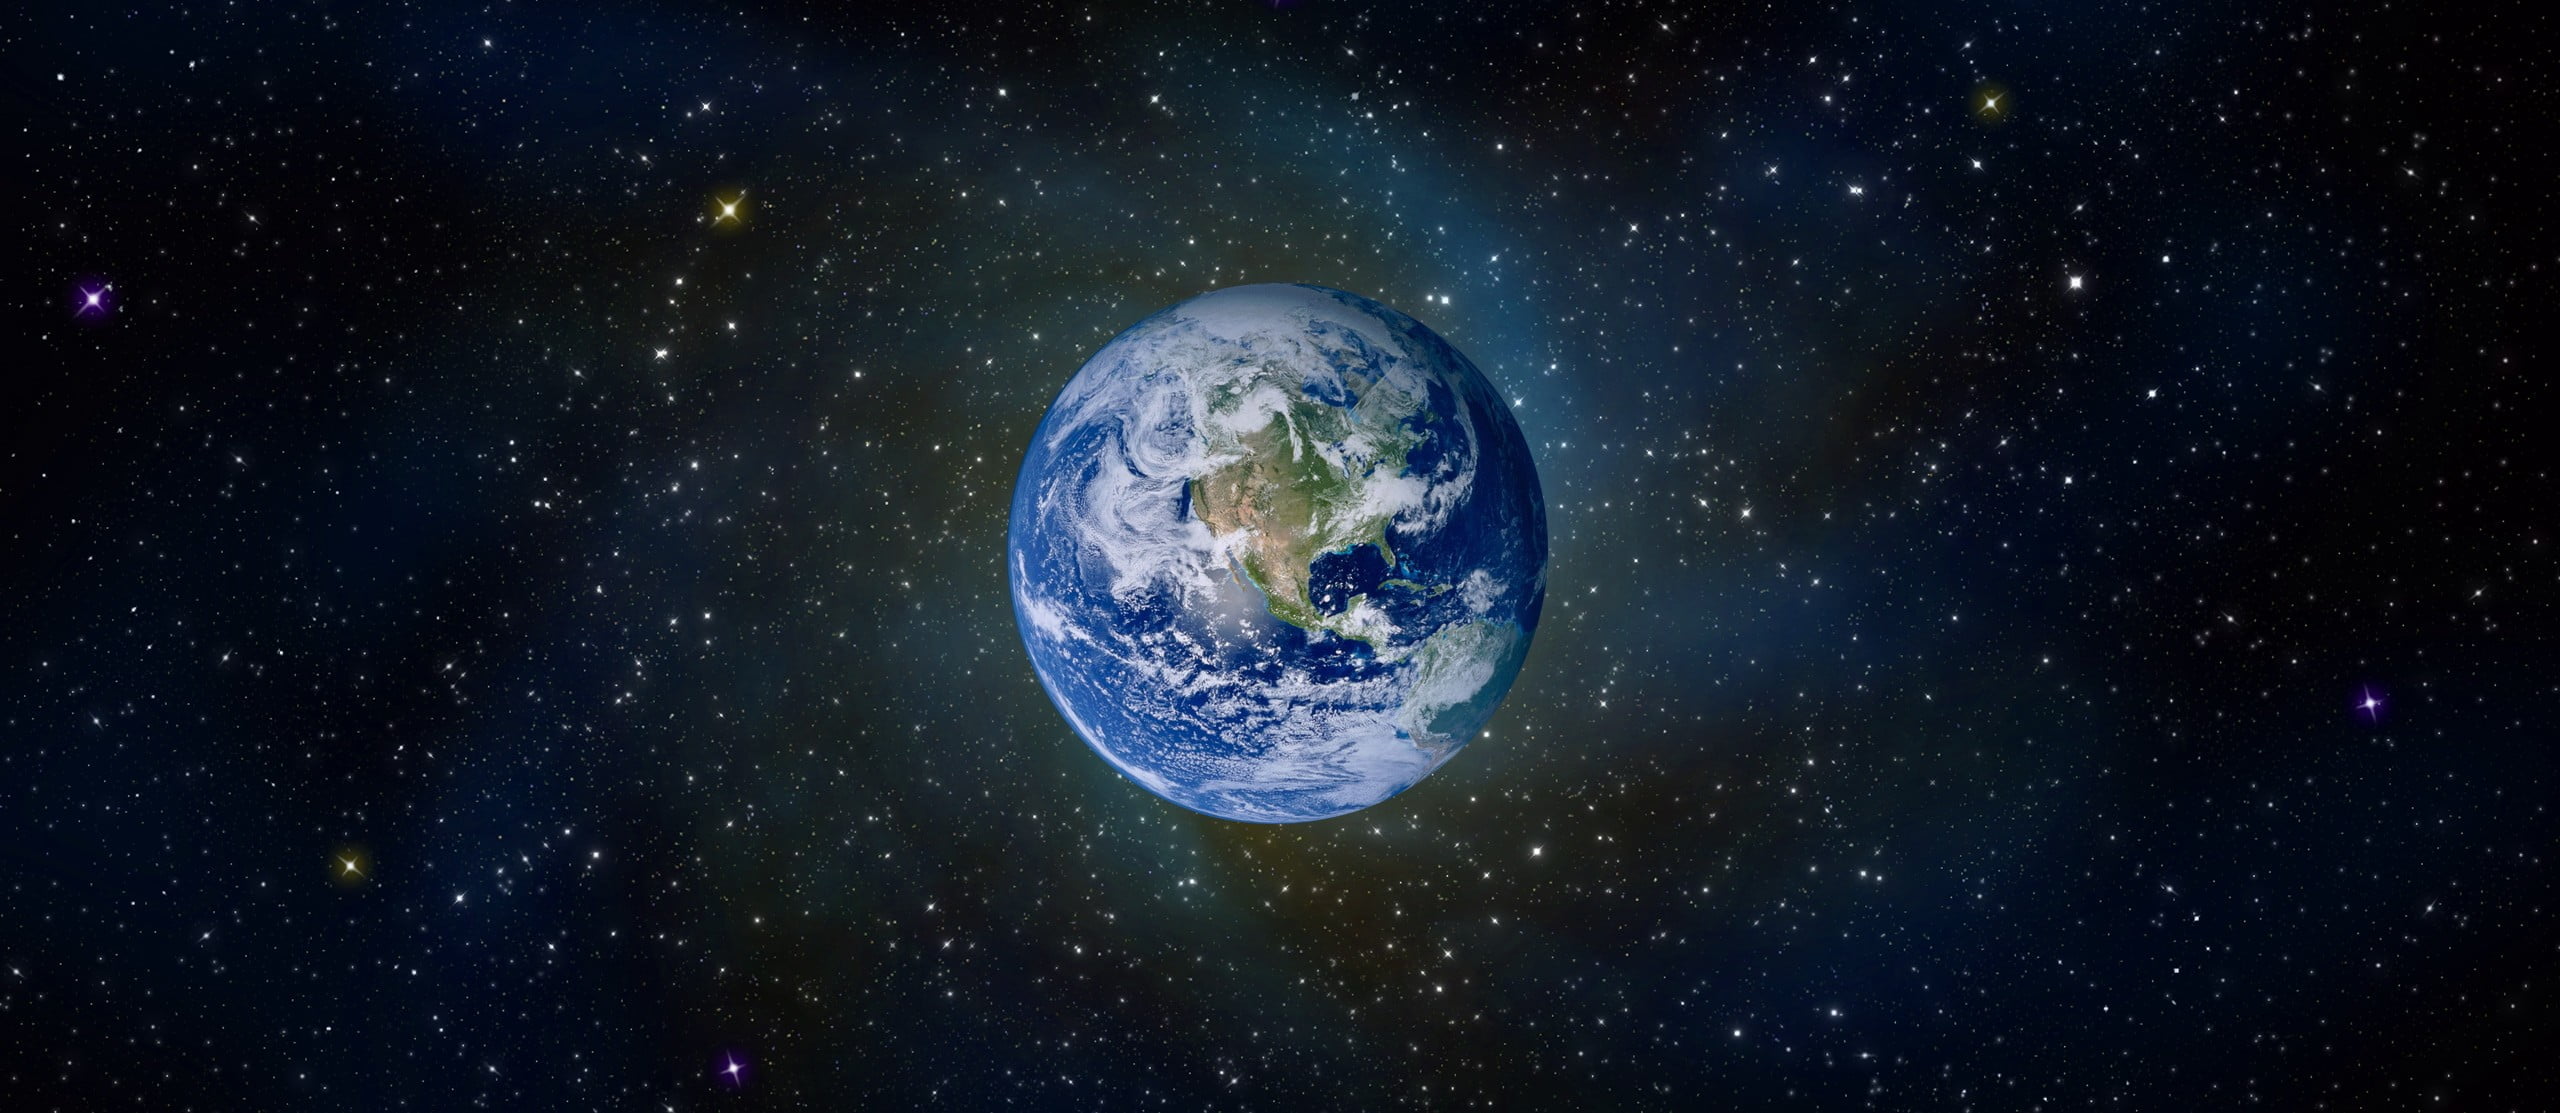 Earth 1 Jpg E1450186081835 مجلة نقطة العلمية